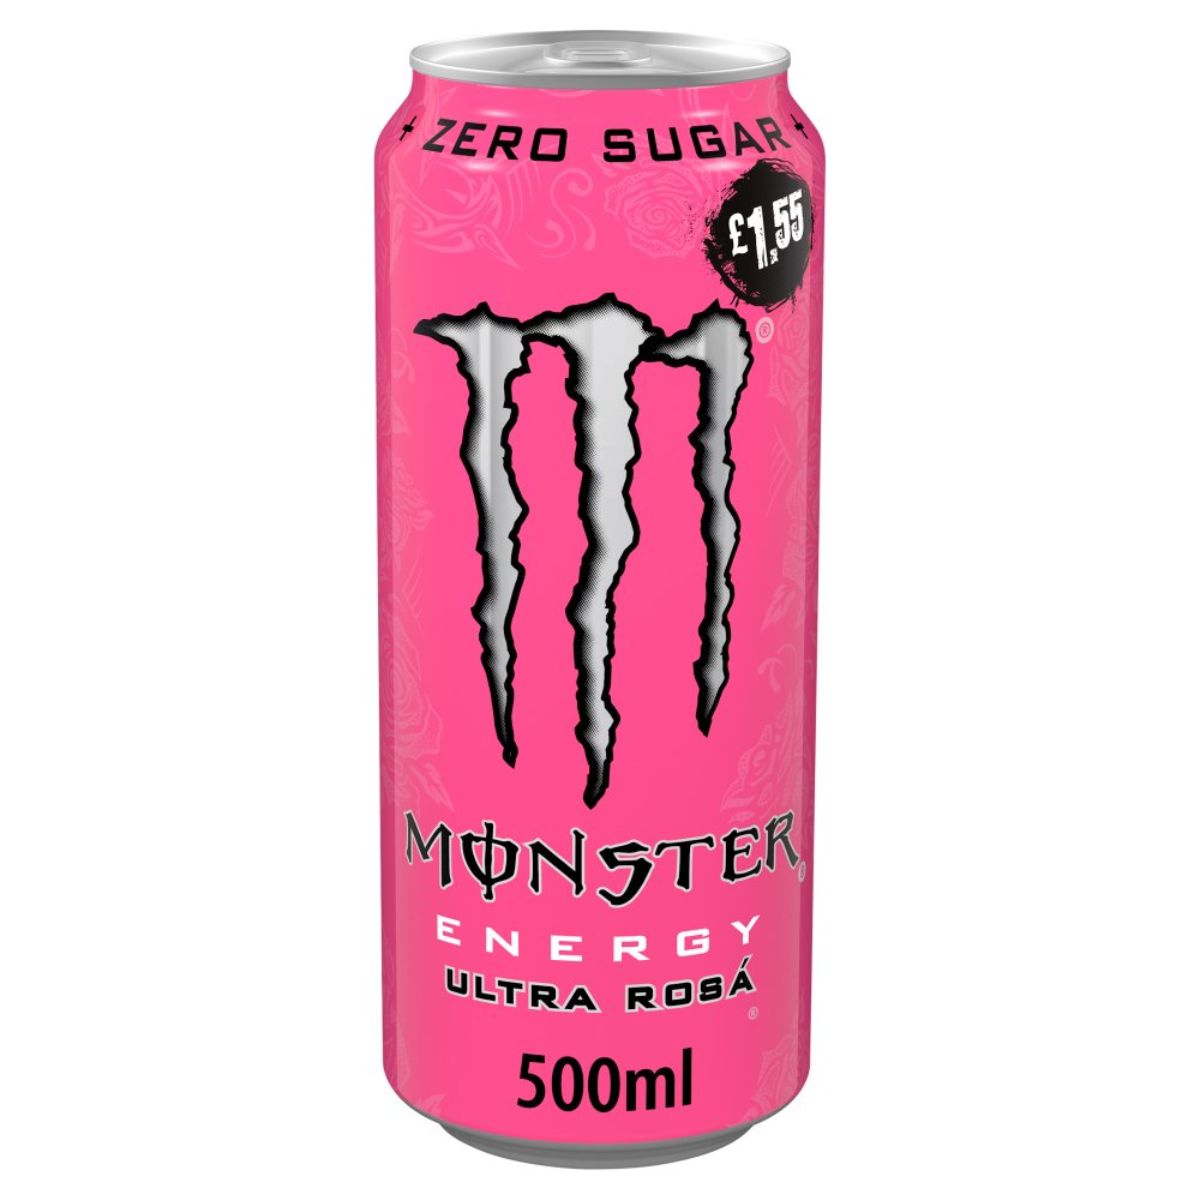 Monster - Energy Ultra Rosa - 500ml.